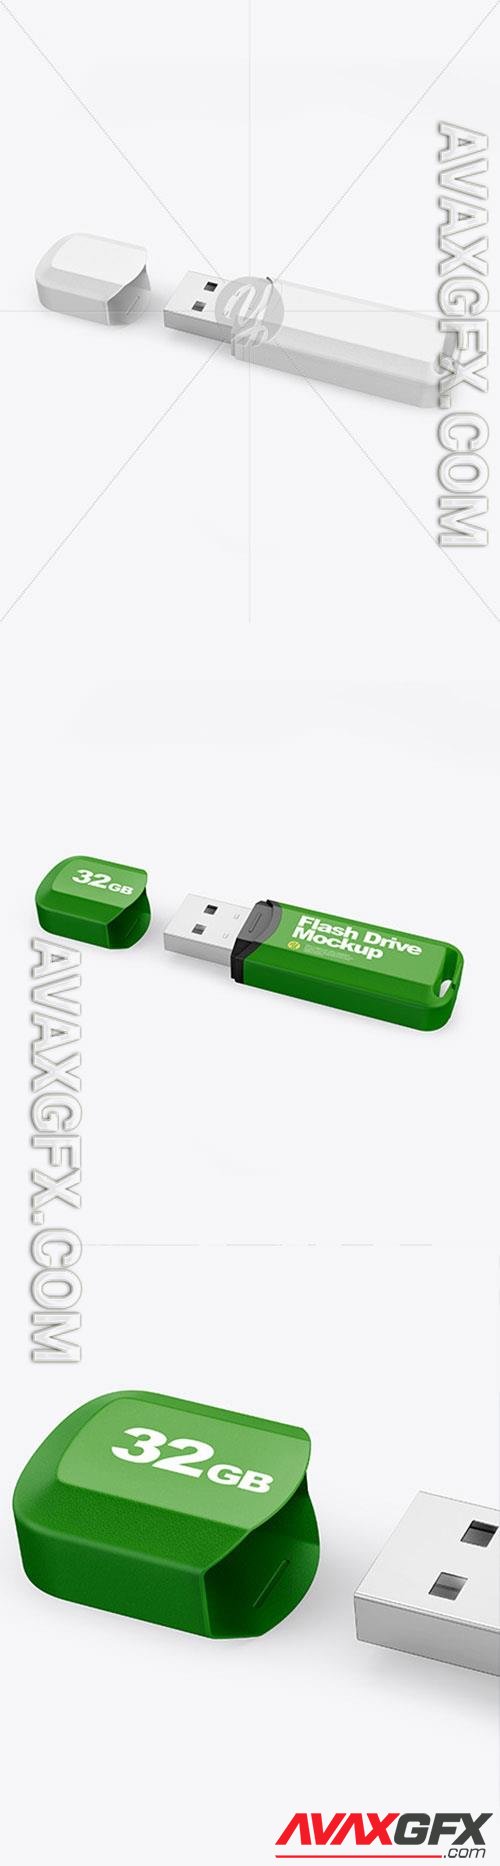 Textured USB Flash Drive Mockup 86504 TIF